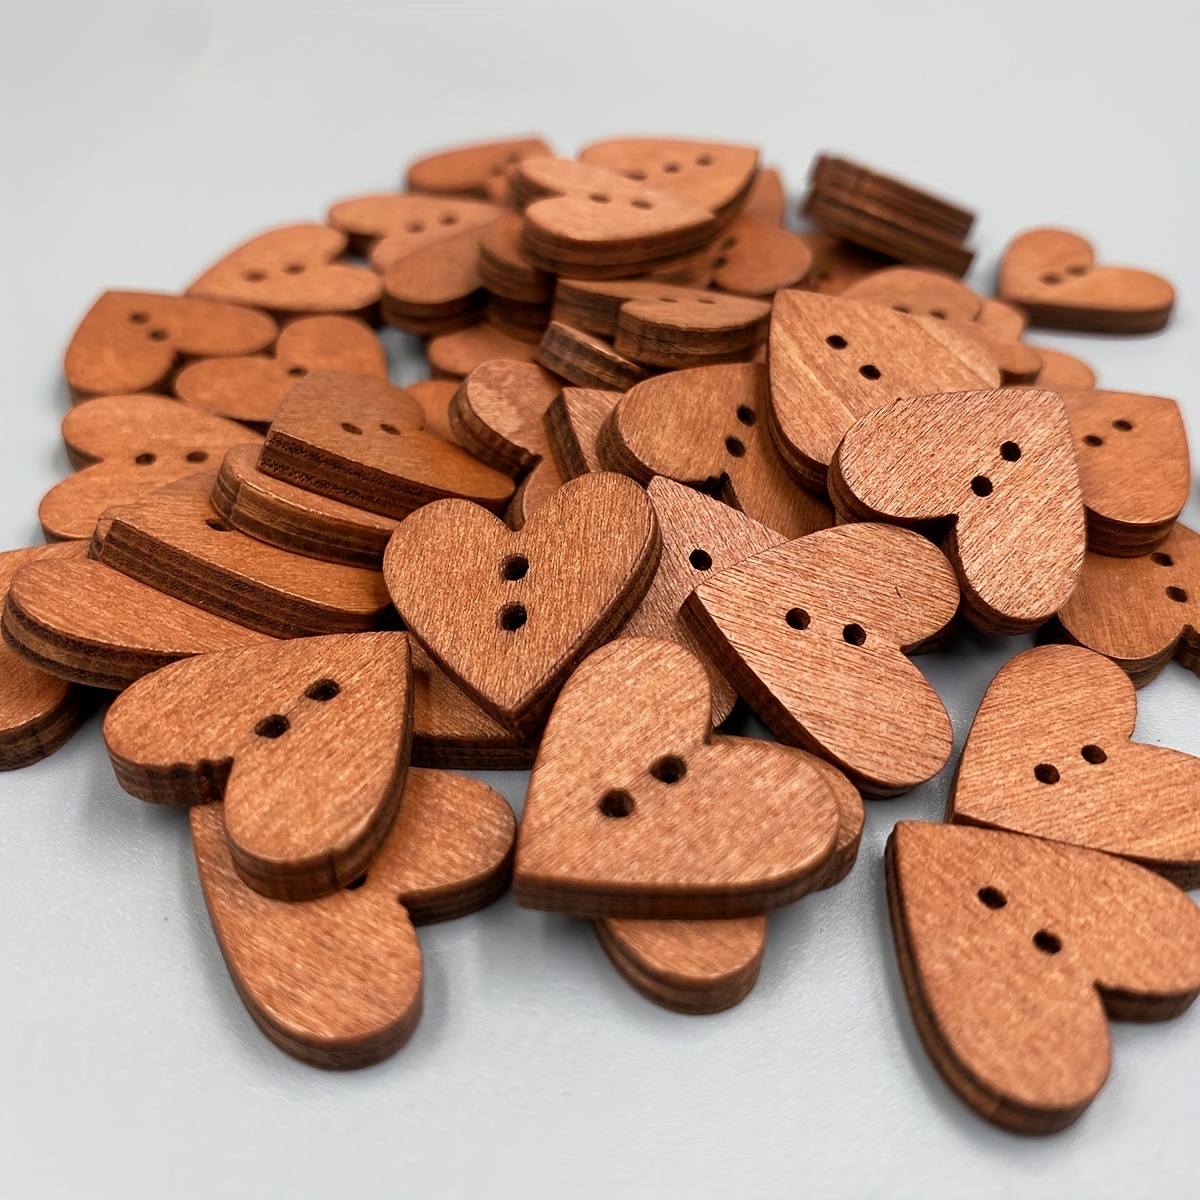 Ciieeo 100pcs Wooden Buttons Dress Buttons Blazer Buttons Wooden Coat  Buttons Embellishments Button Buttons for Crafts Kids Sewing Buttons Heart  Shape